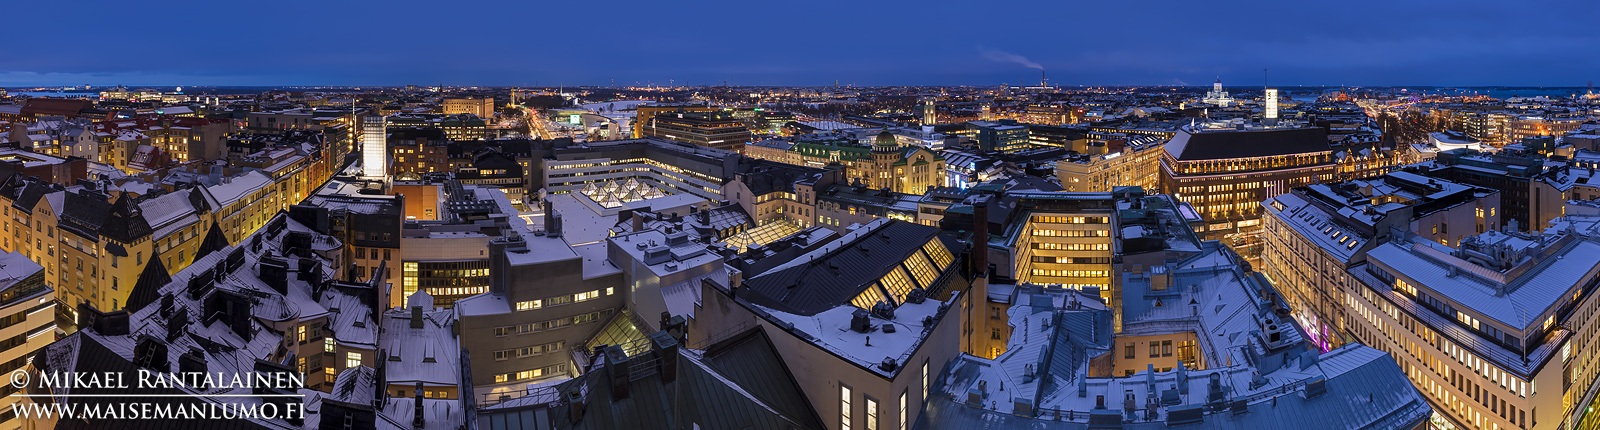 Sinisen hetken panoraama Hotelli Tornista, Helsinki (6 vaakakuvan panoraama Photoshopissa, 23 mm, ISO 100, f/9 ja exposure blend (8 ja 3,2 sekuntia))